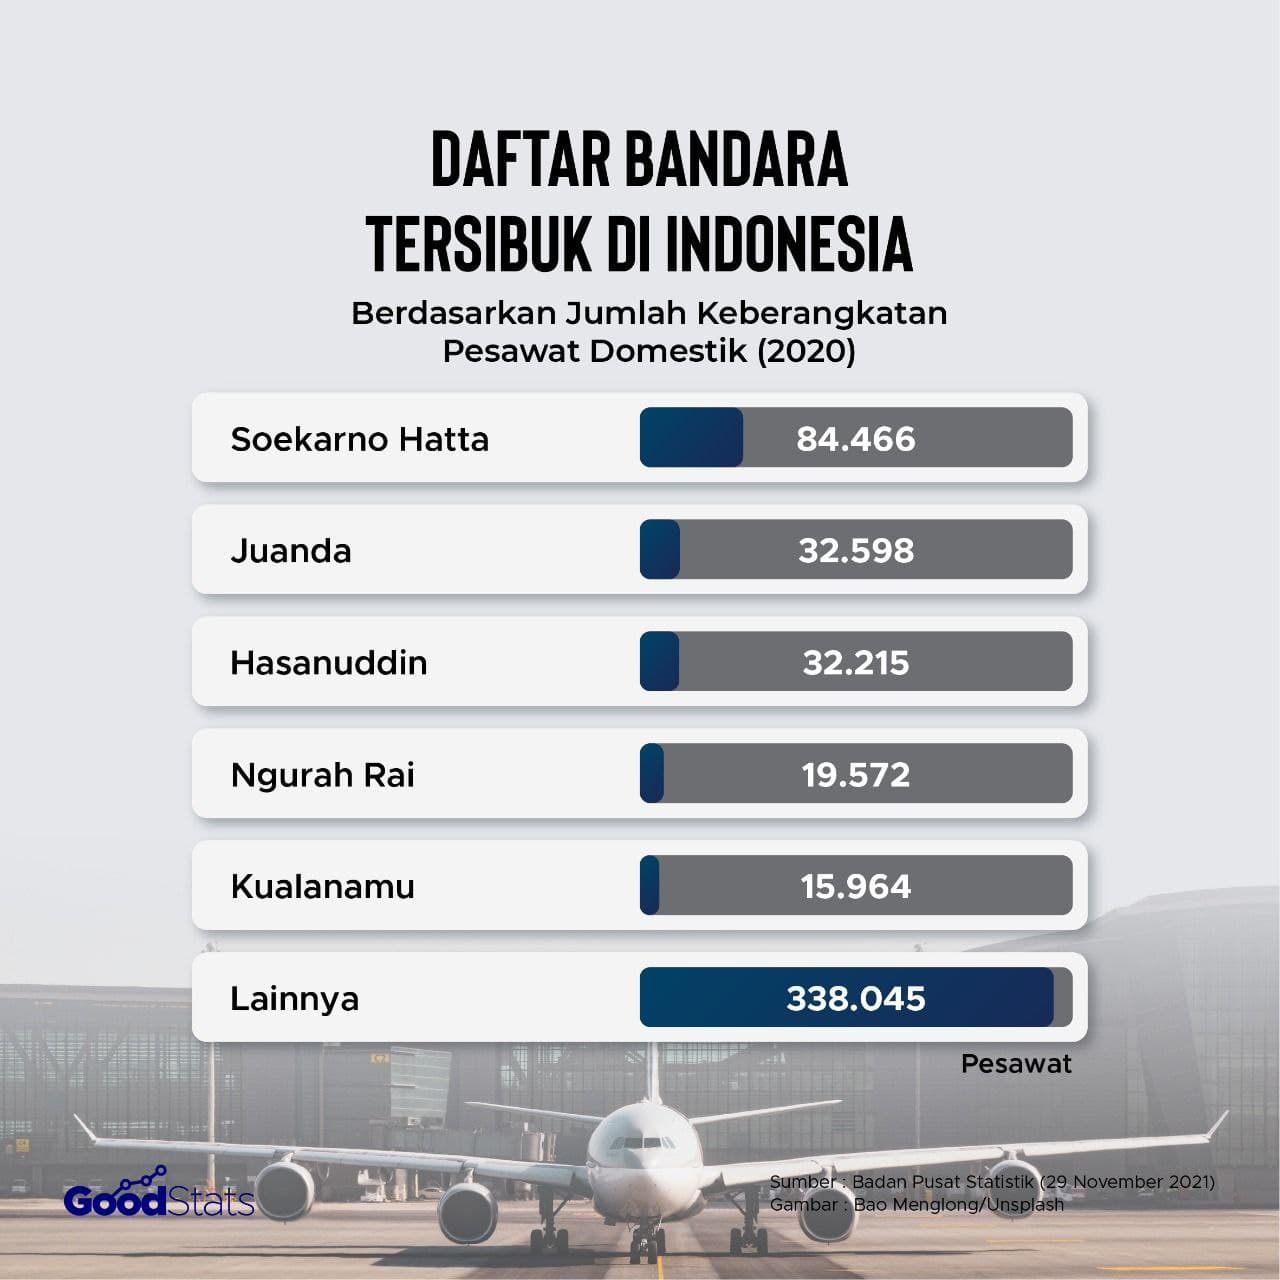 Daftar bandara tersibuk di Indonesia © GoodStats